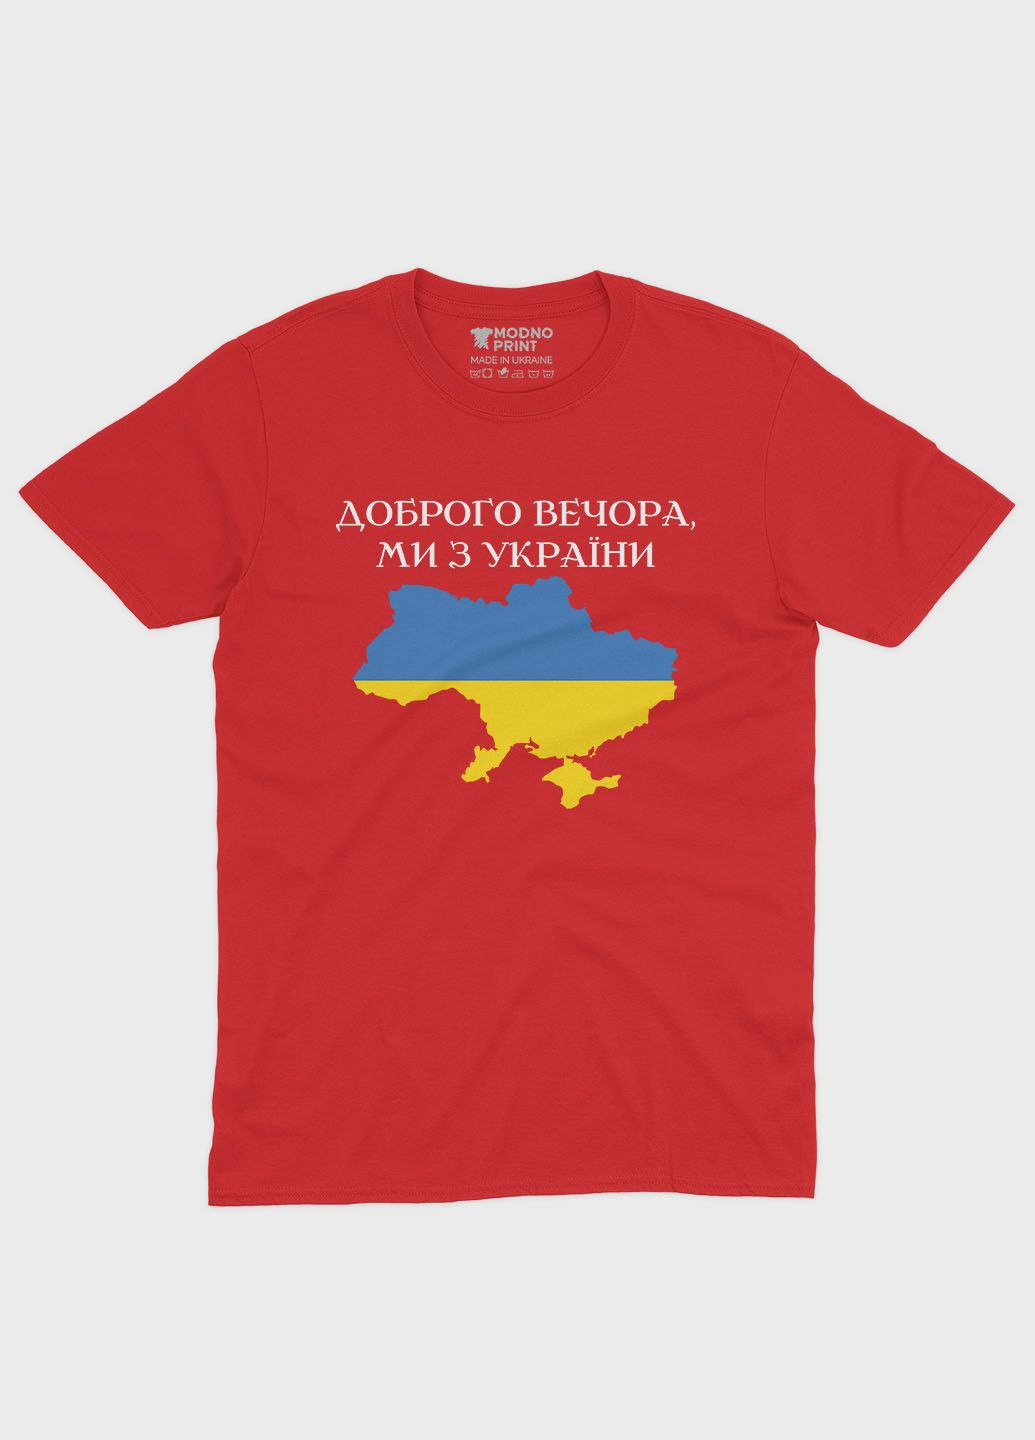 Красная демисезонная футболка для девочки с патриотическим принтом добрый вечер (ts001-2-sre-005-1-048-g) Modno